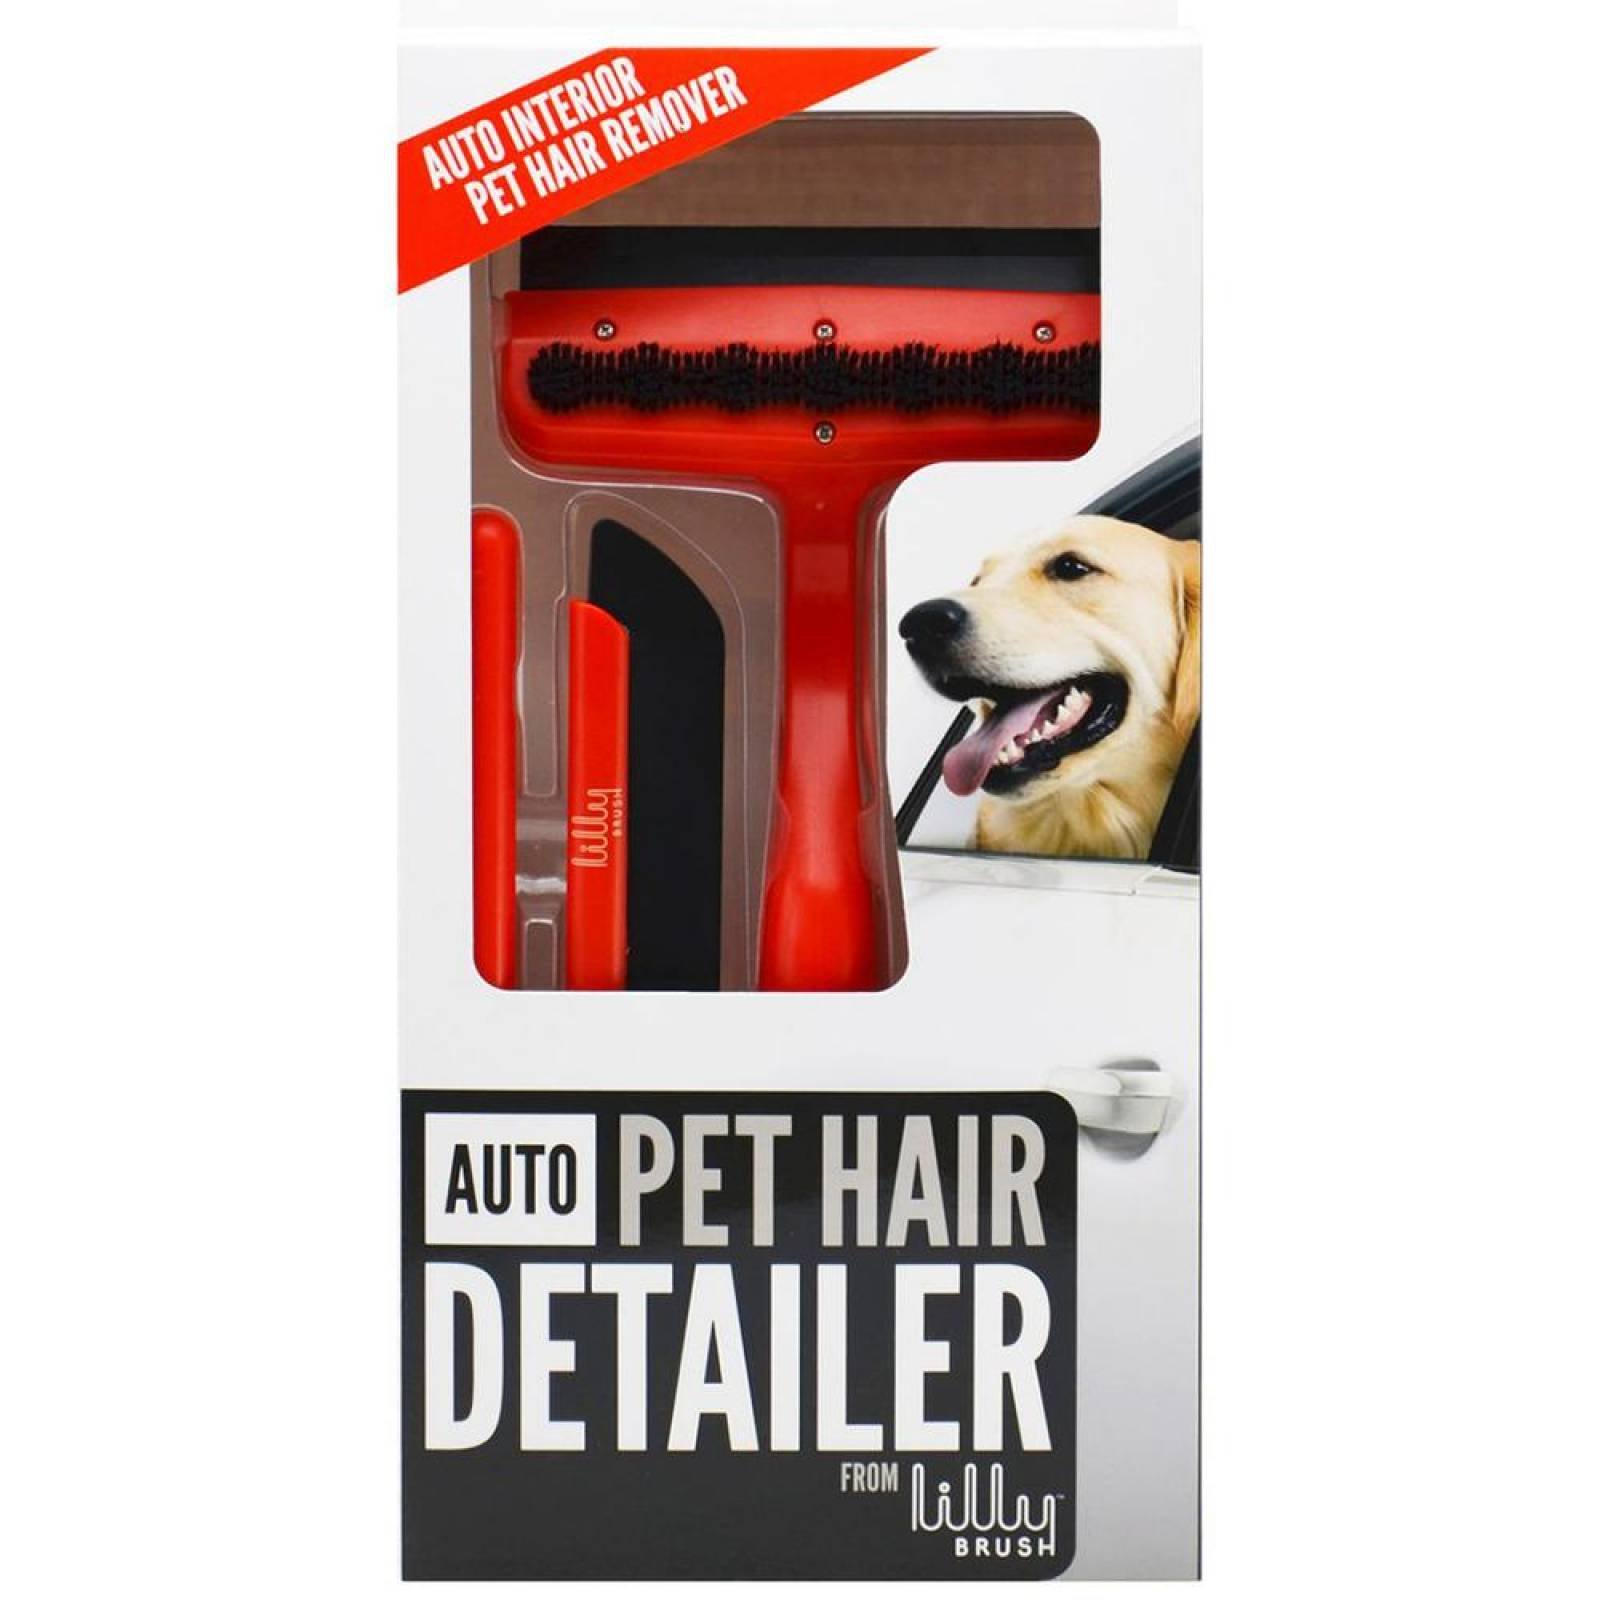 Auto Pet Hair Detailer - Kit Removedor de Pelos para Autos Rojo